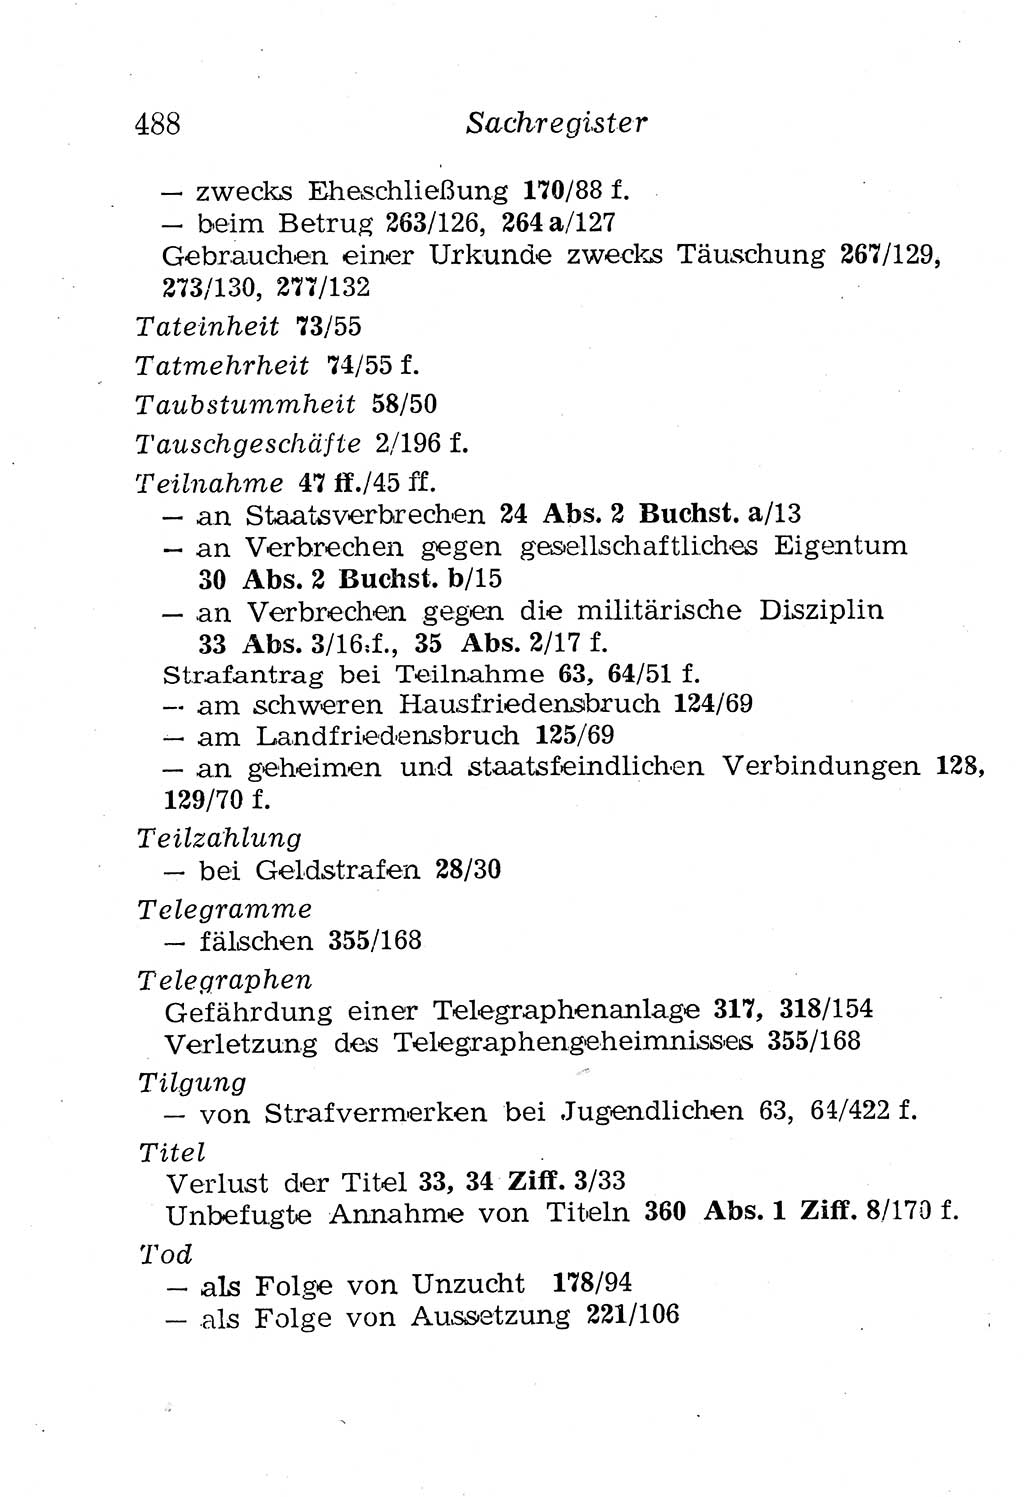 Strafgesetzbuch (StGB) und andere Strafgesetze [Deutsche Demokratische Republik (DDR)] 1958, Seite 488 (StGB Strafges. DDR 1958, S. 488)